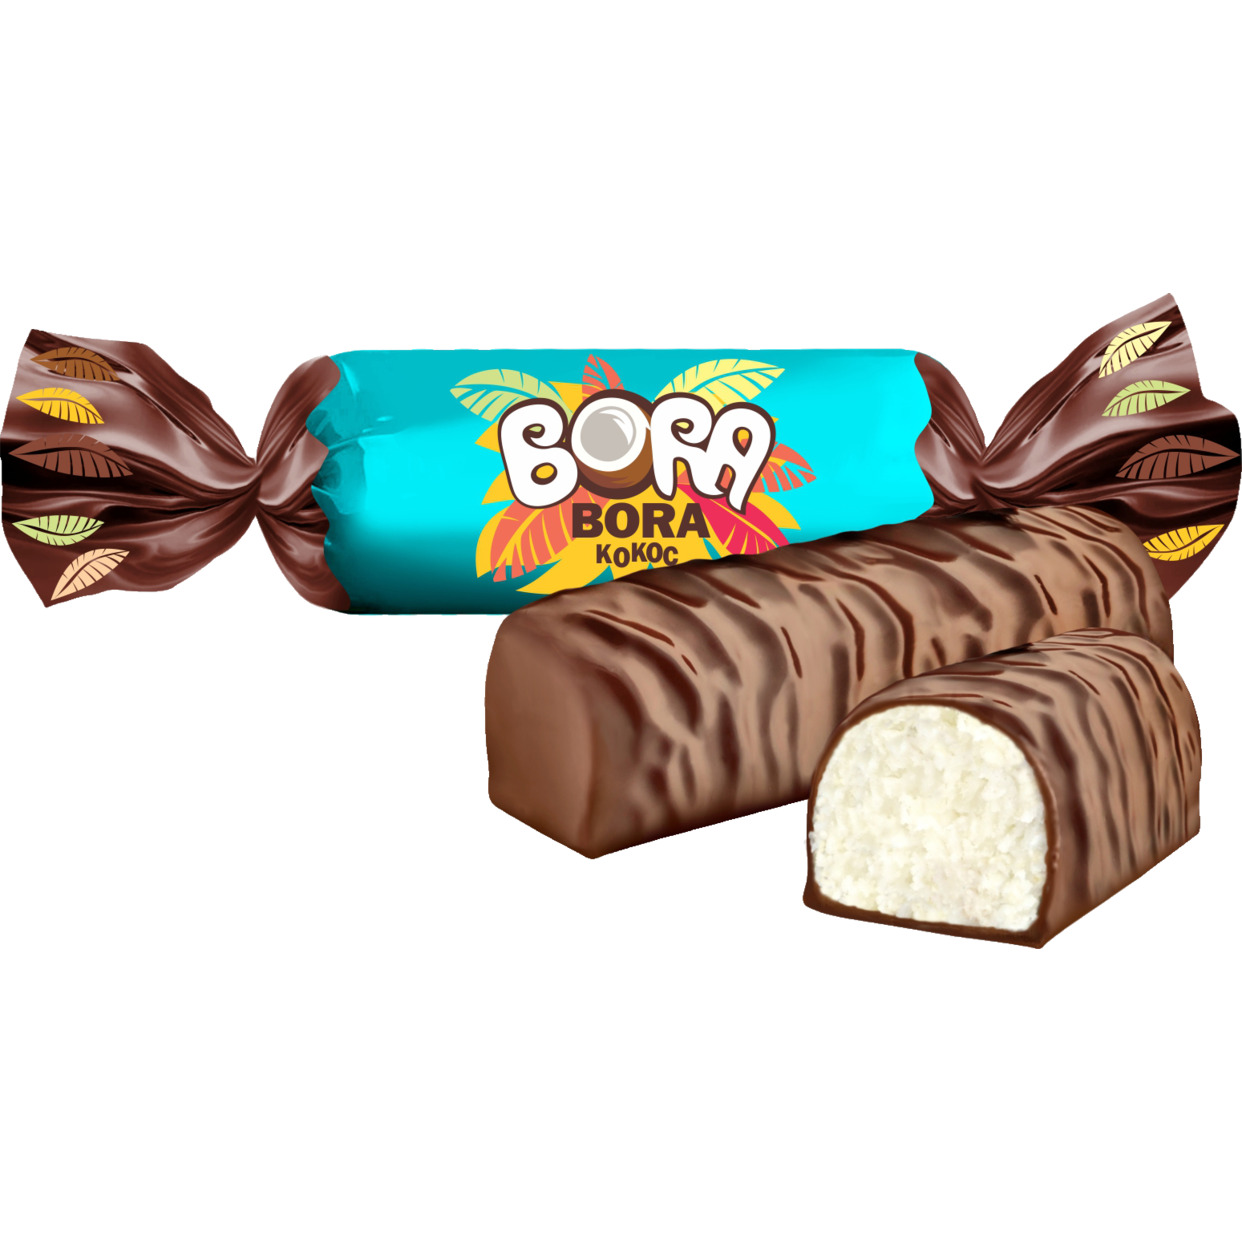 Конфеты "BORA-BORA" кокос с комбинированными конфетными массами глазированные 1 кг по акции в Пятерочке